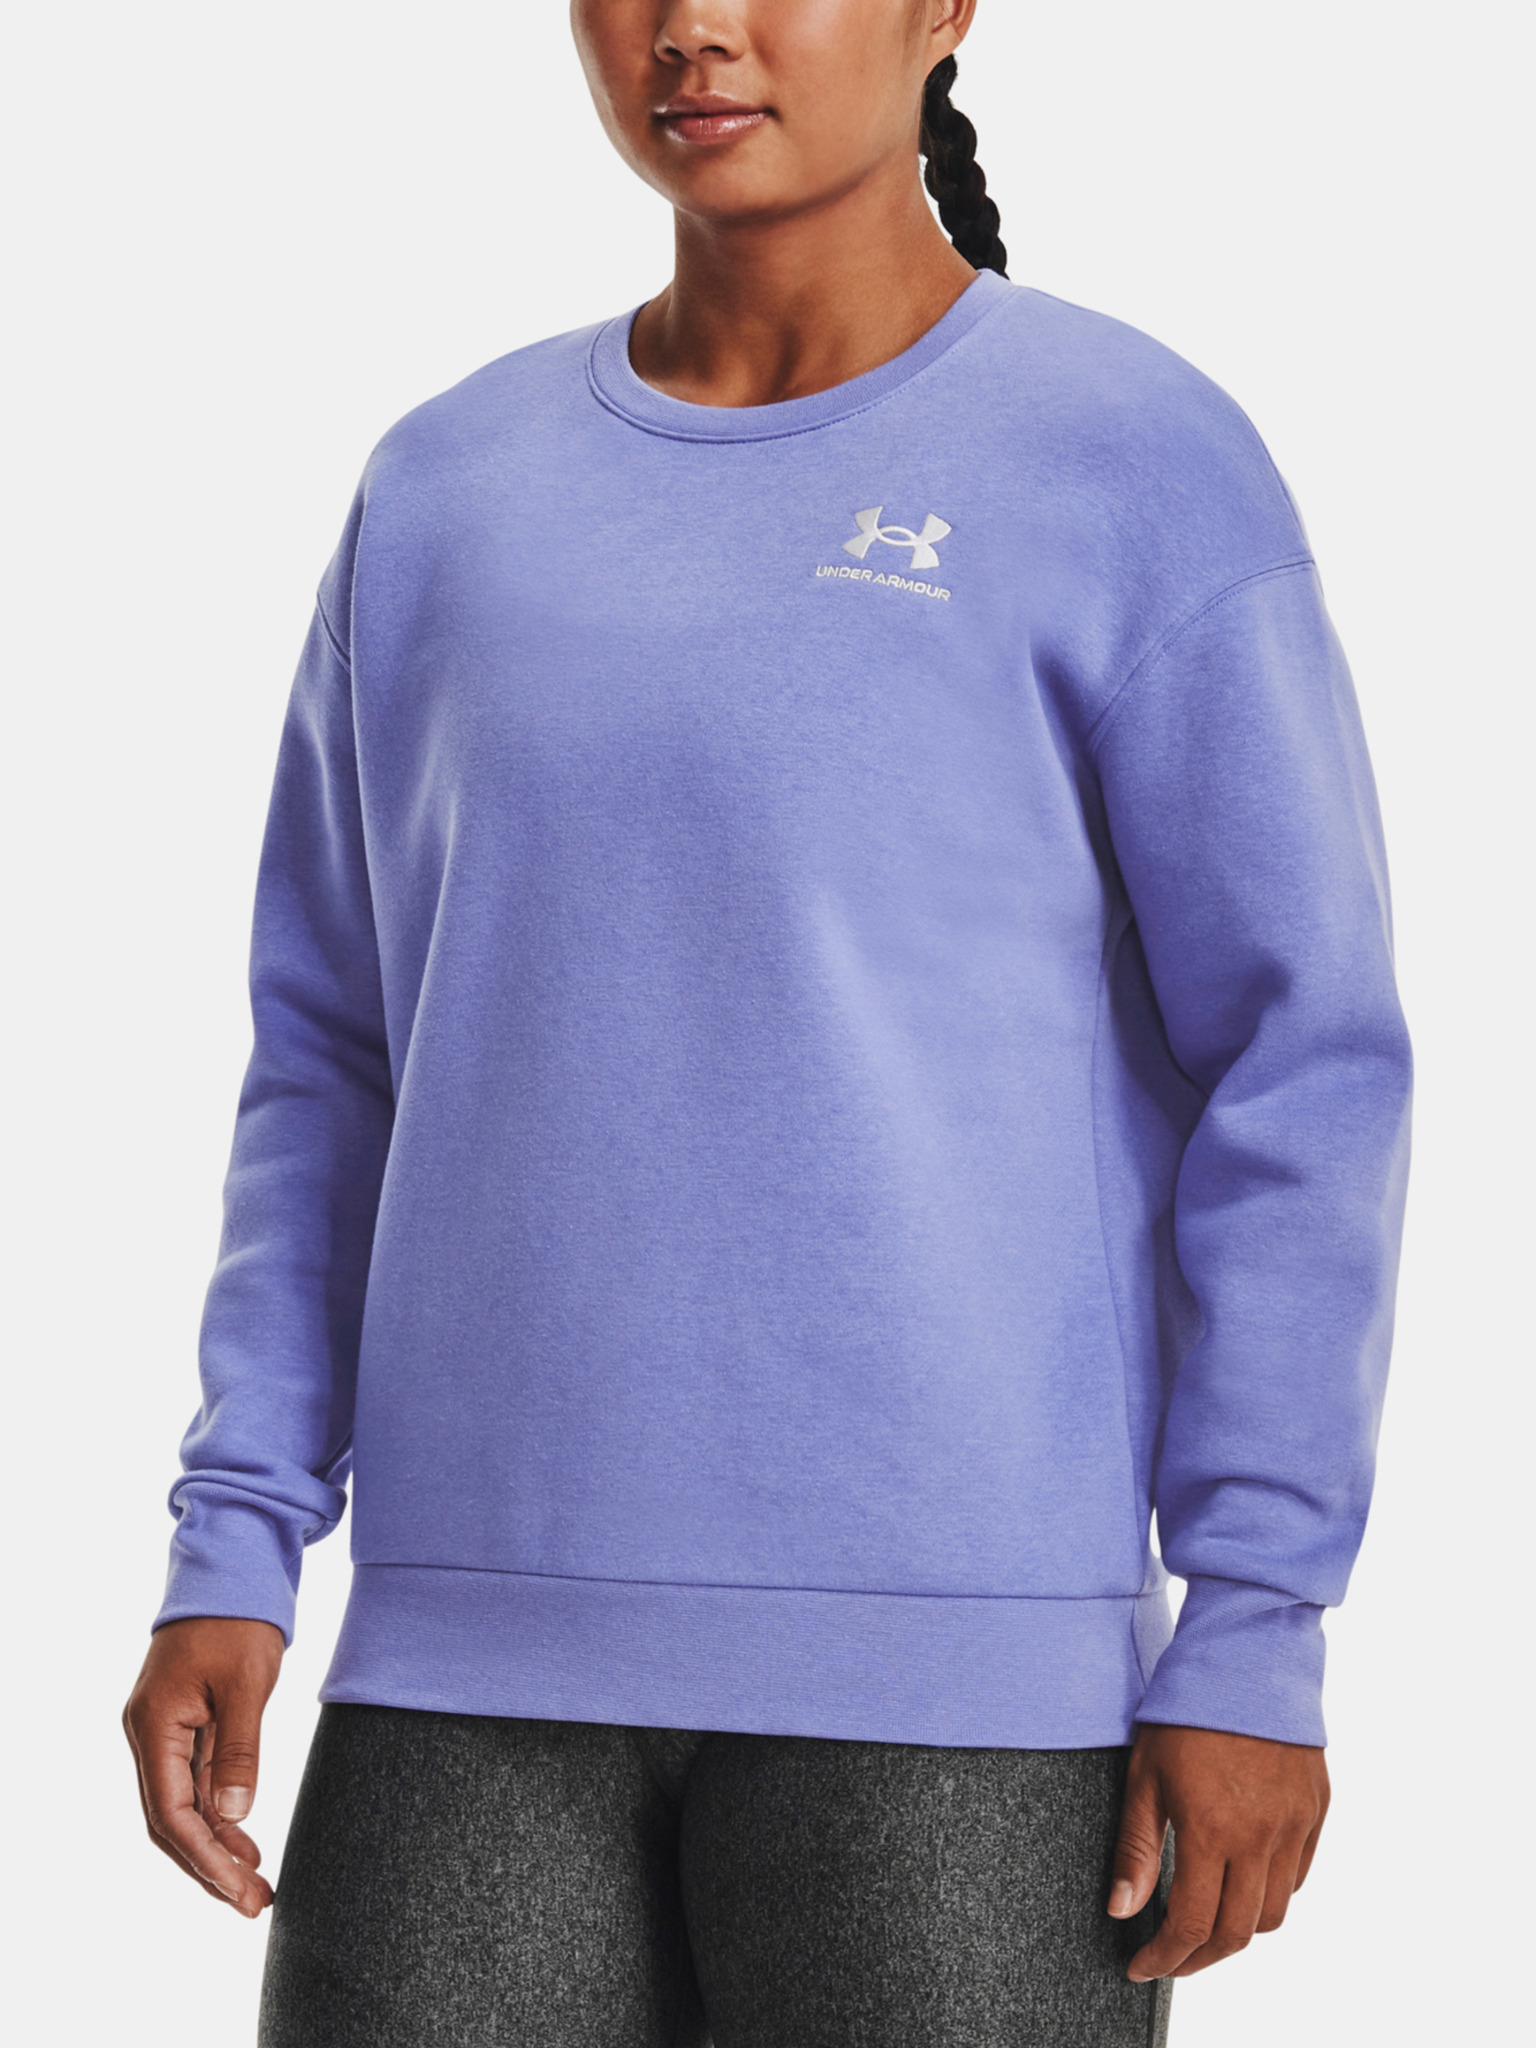 Under Armour - Essential Fleece Sweatshirt Crew